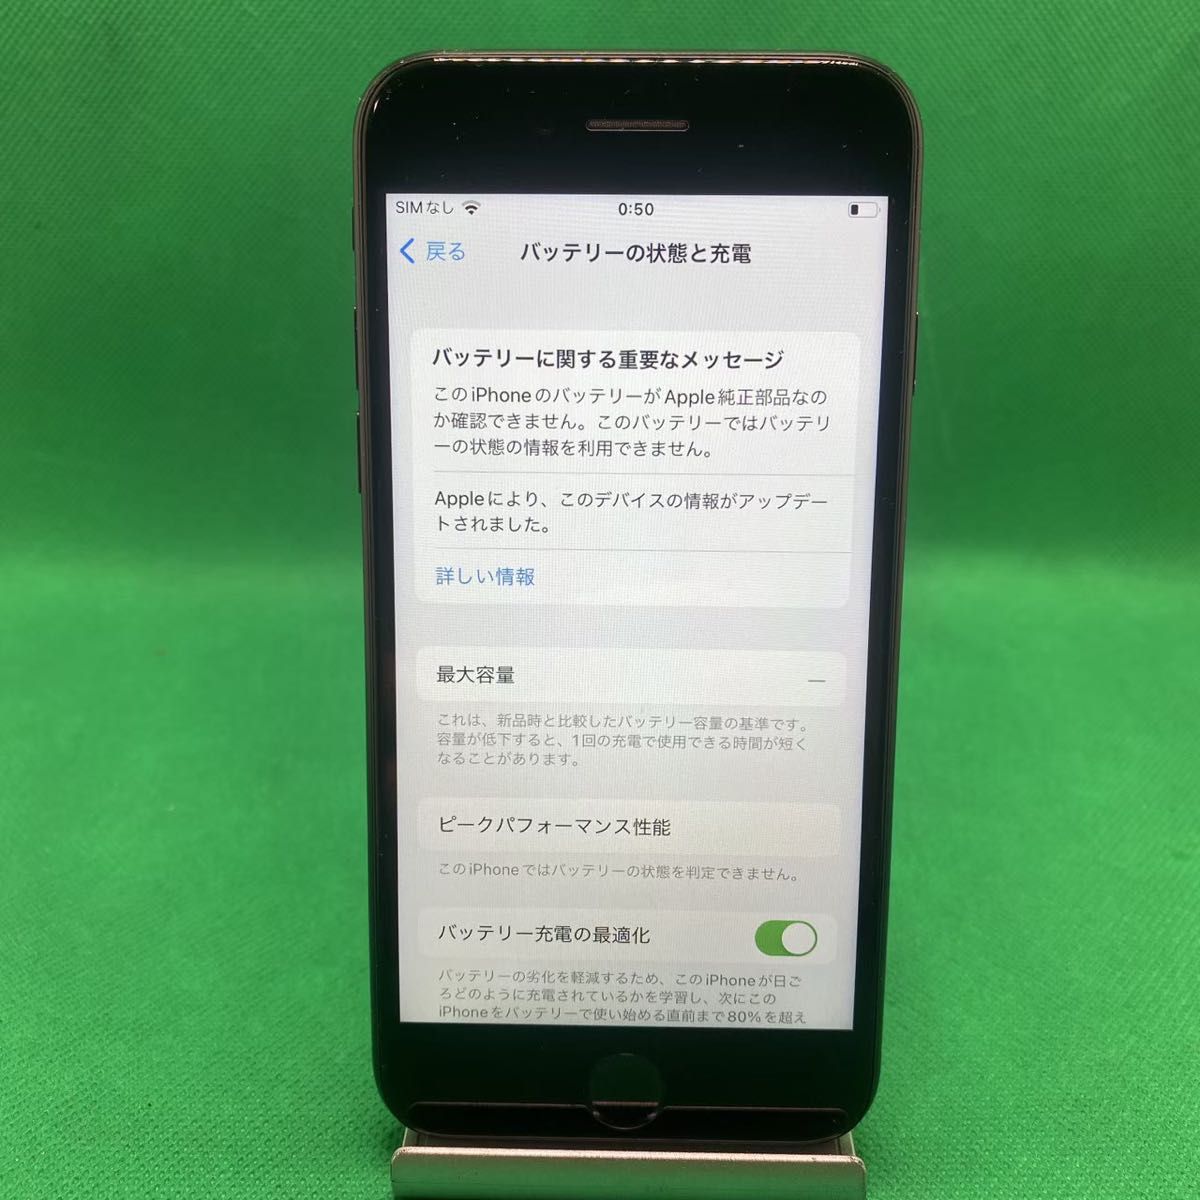 【格安美品】iPhone SE2 128GB simフリー本体 428